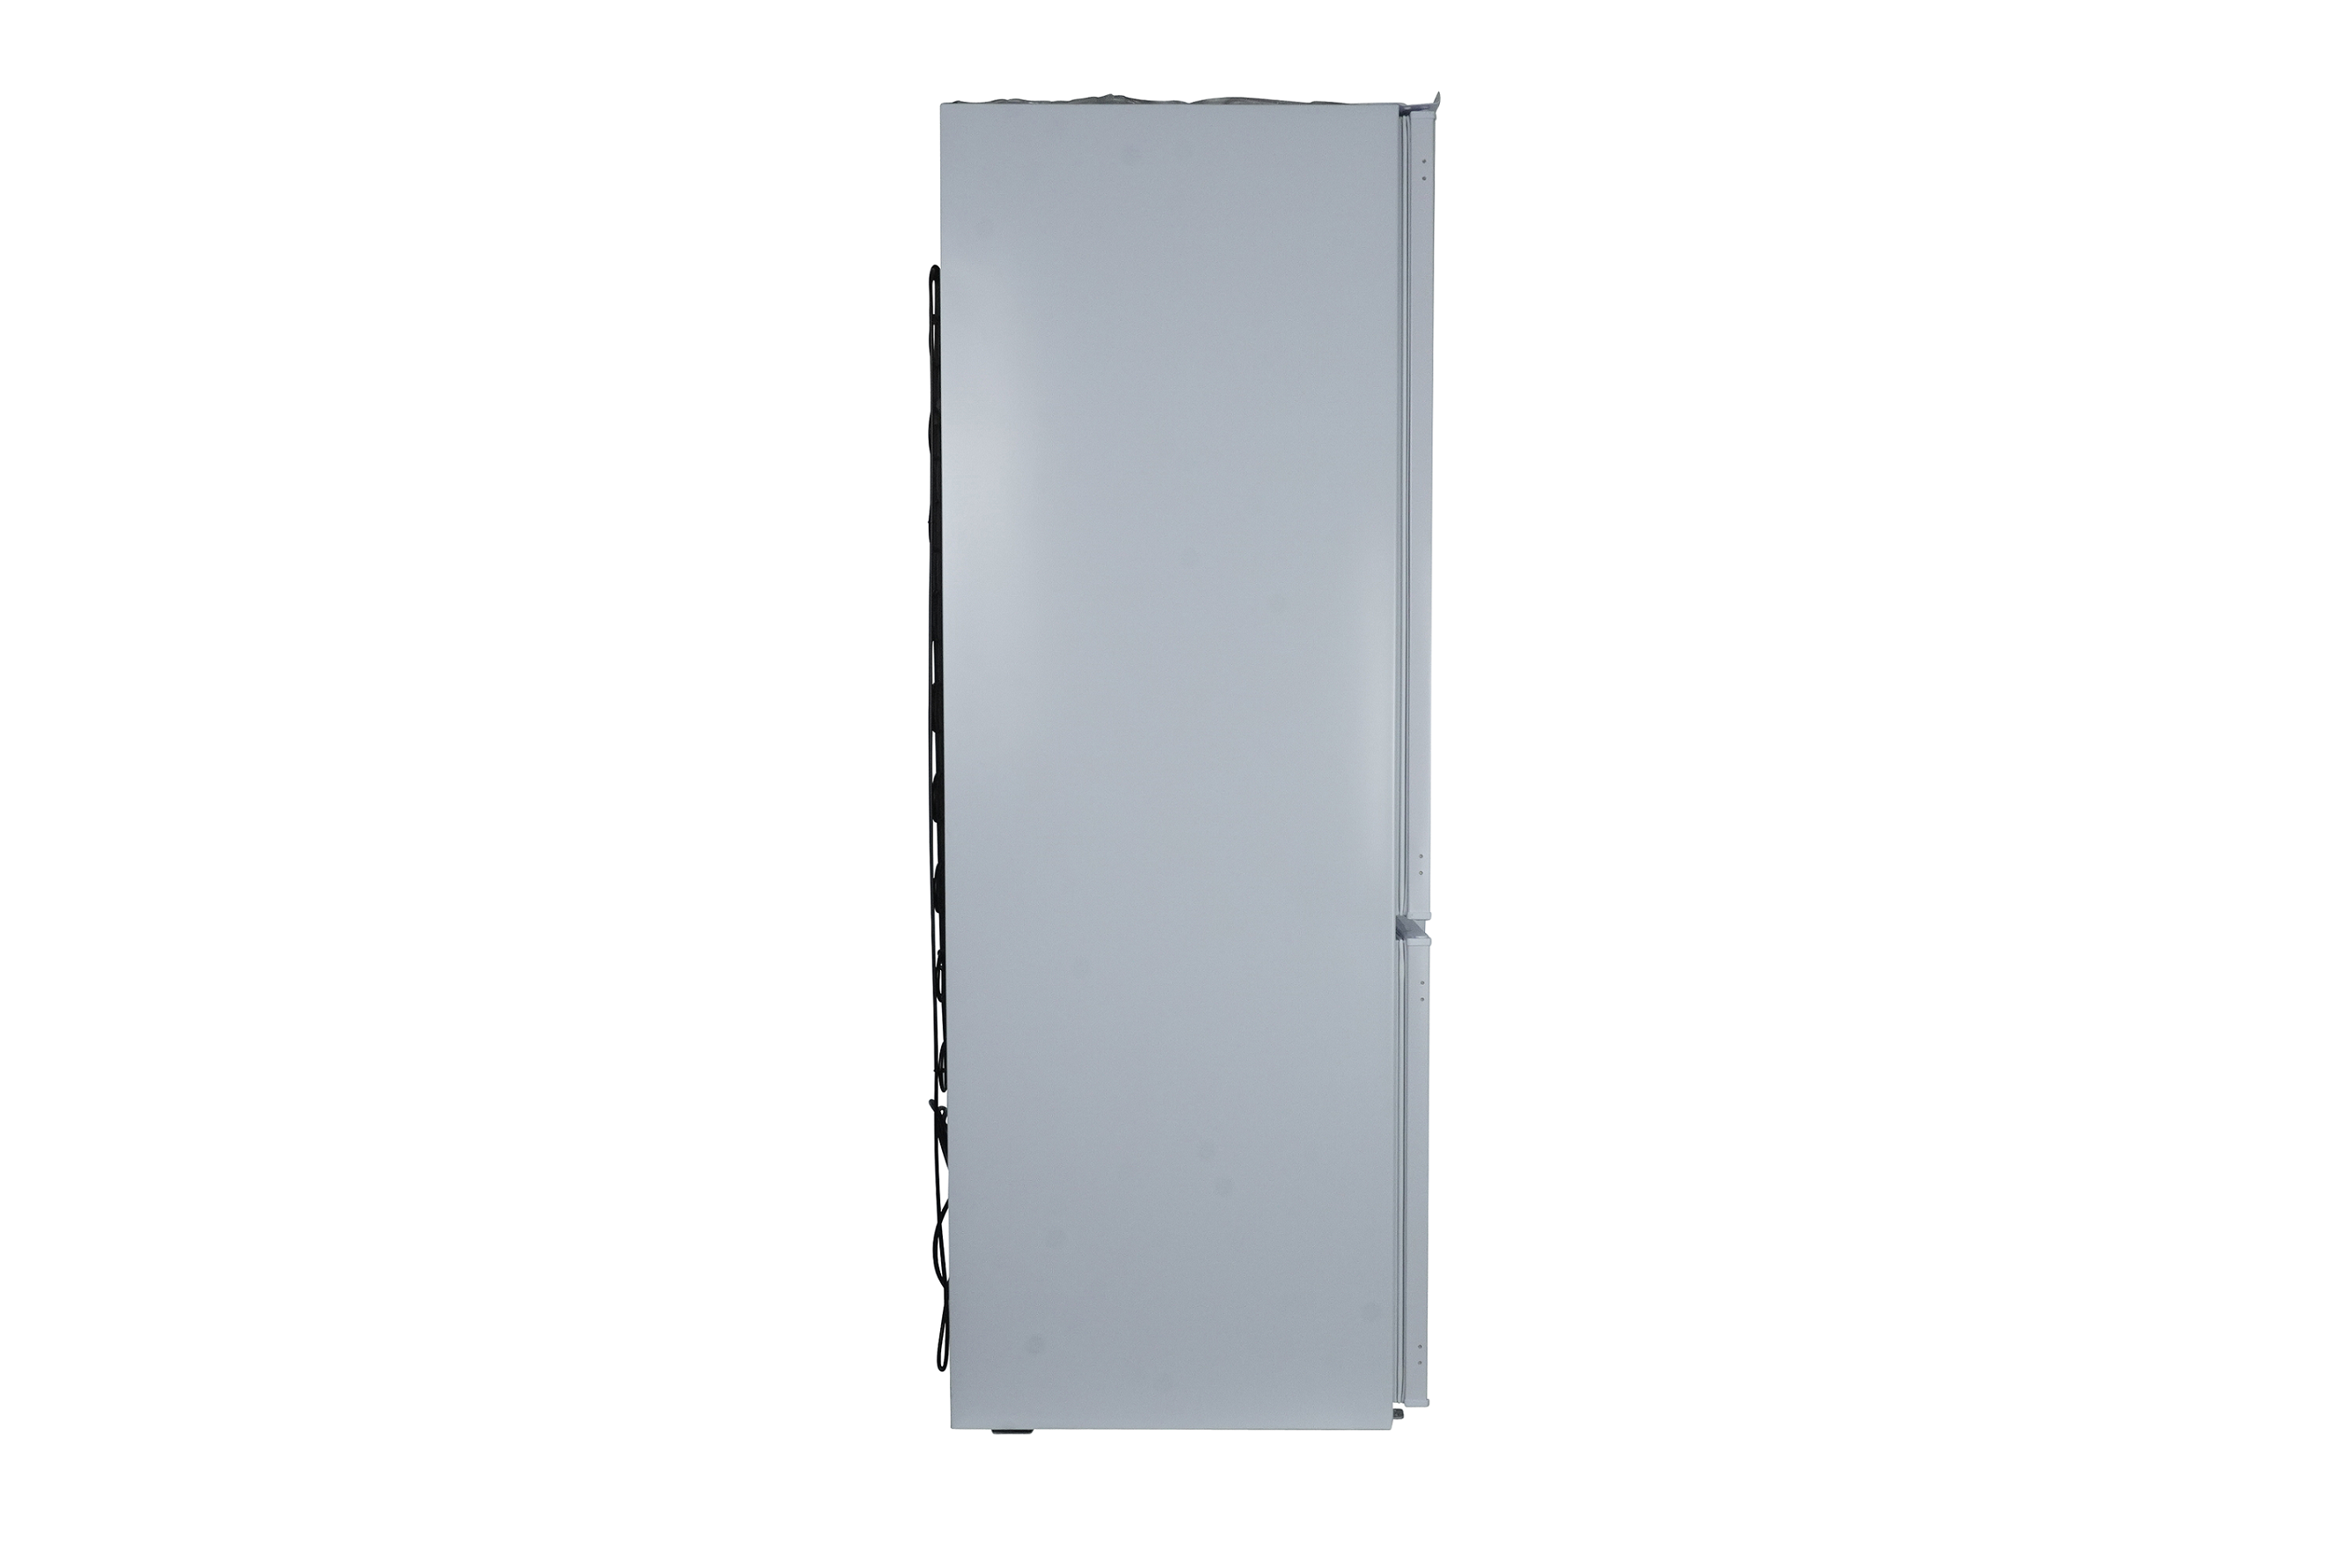 respekta Réfrigérateur Réfrigérateur encastrable Réfrigérateur-congélateur 144 cm